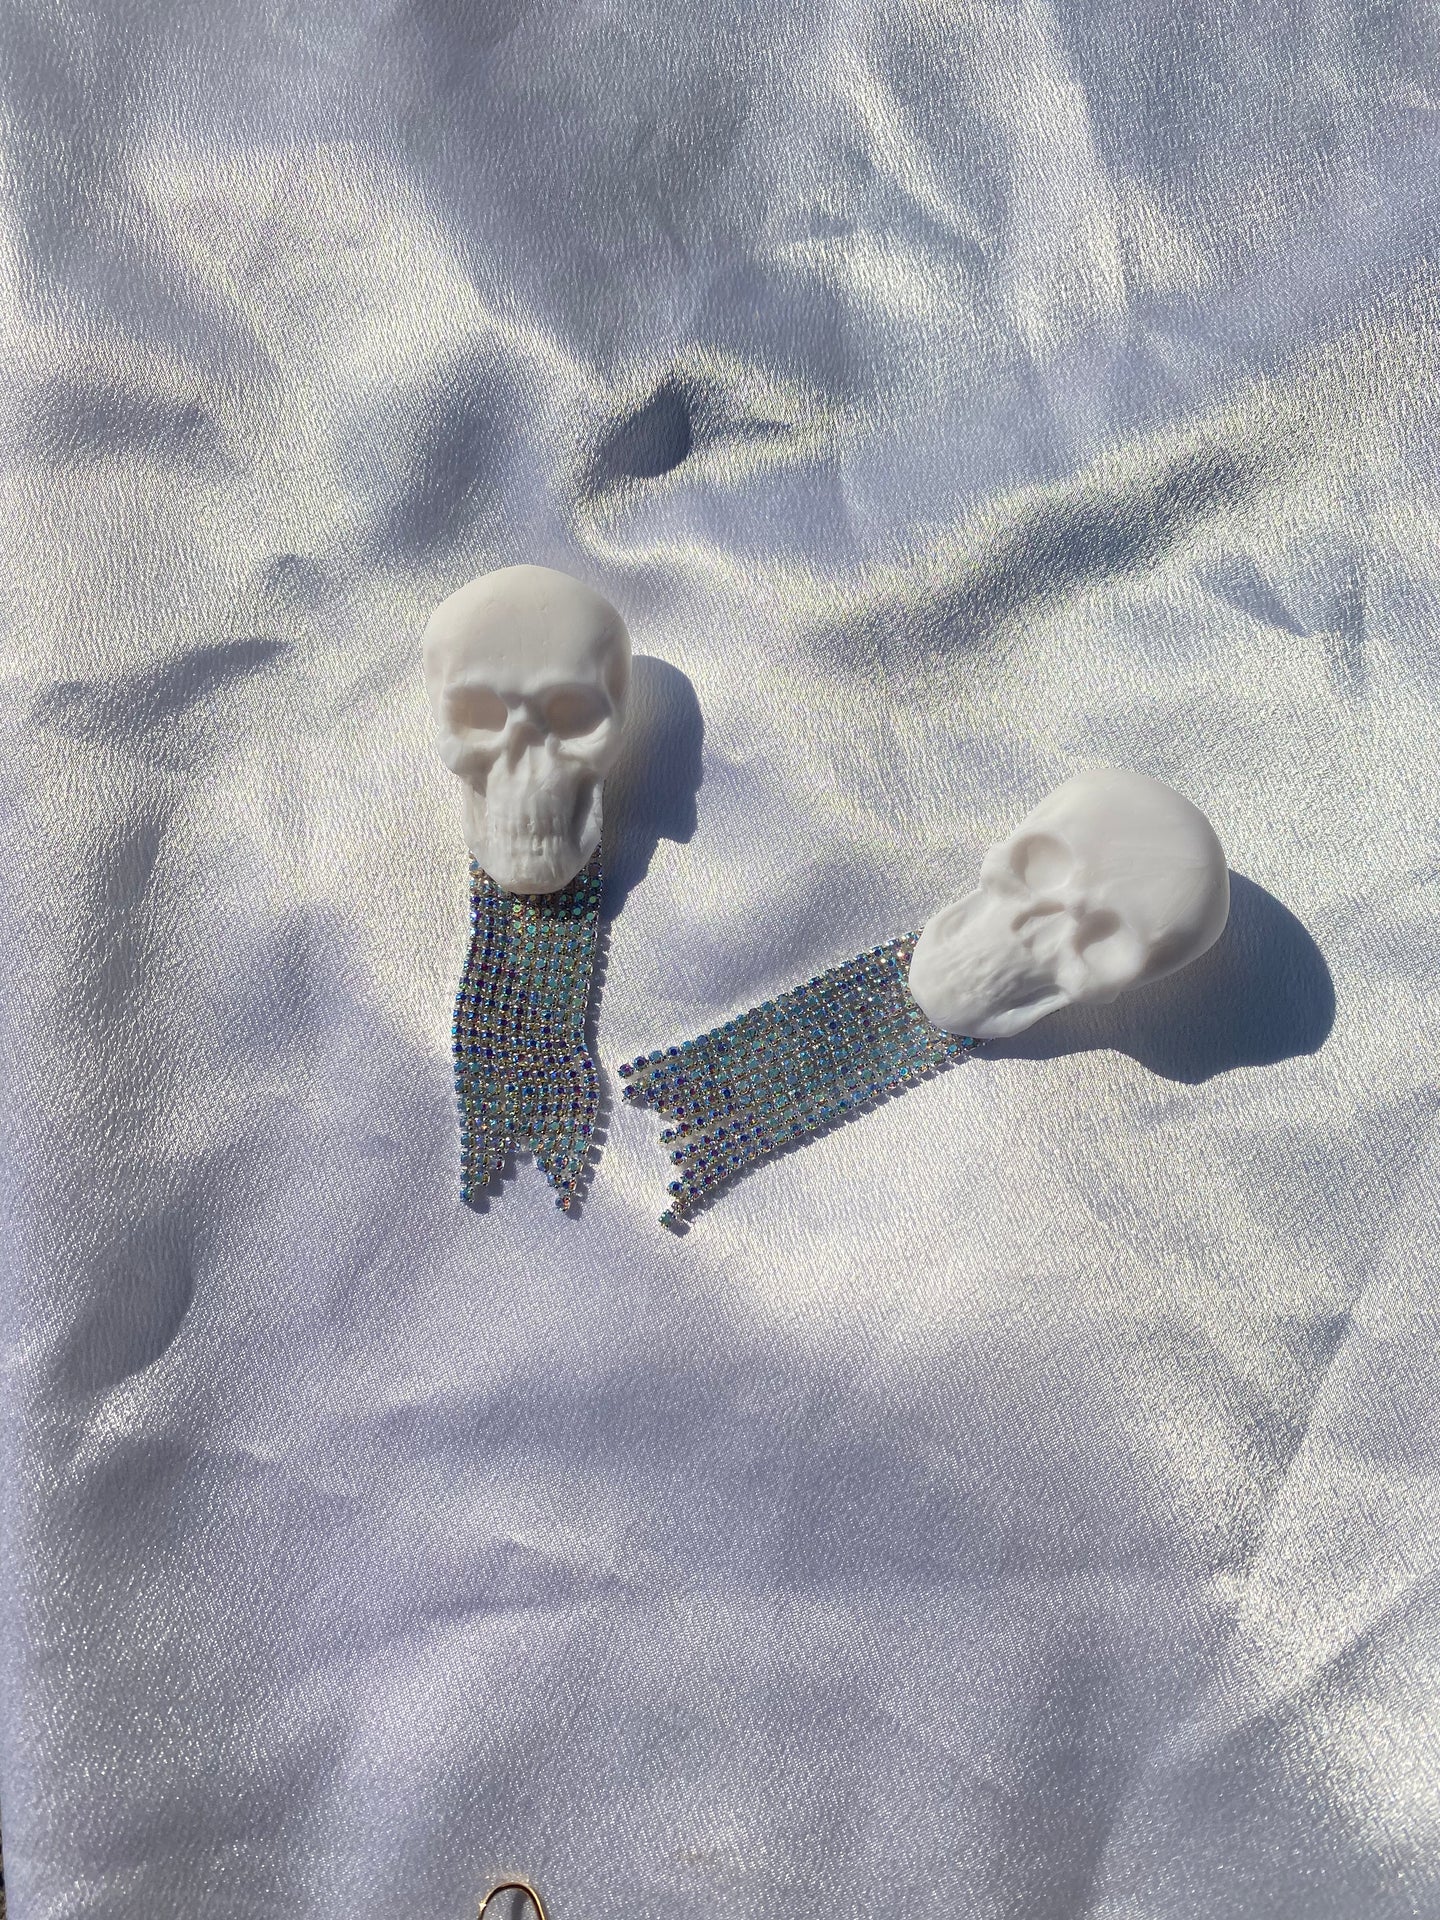 Rhinestone skulls